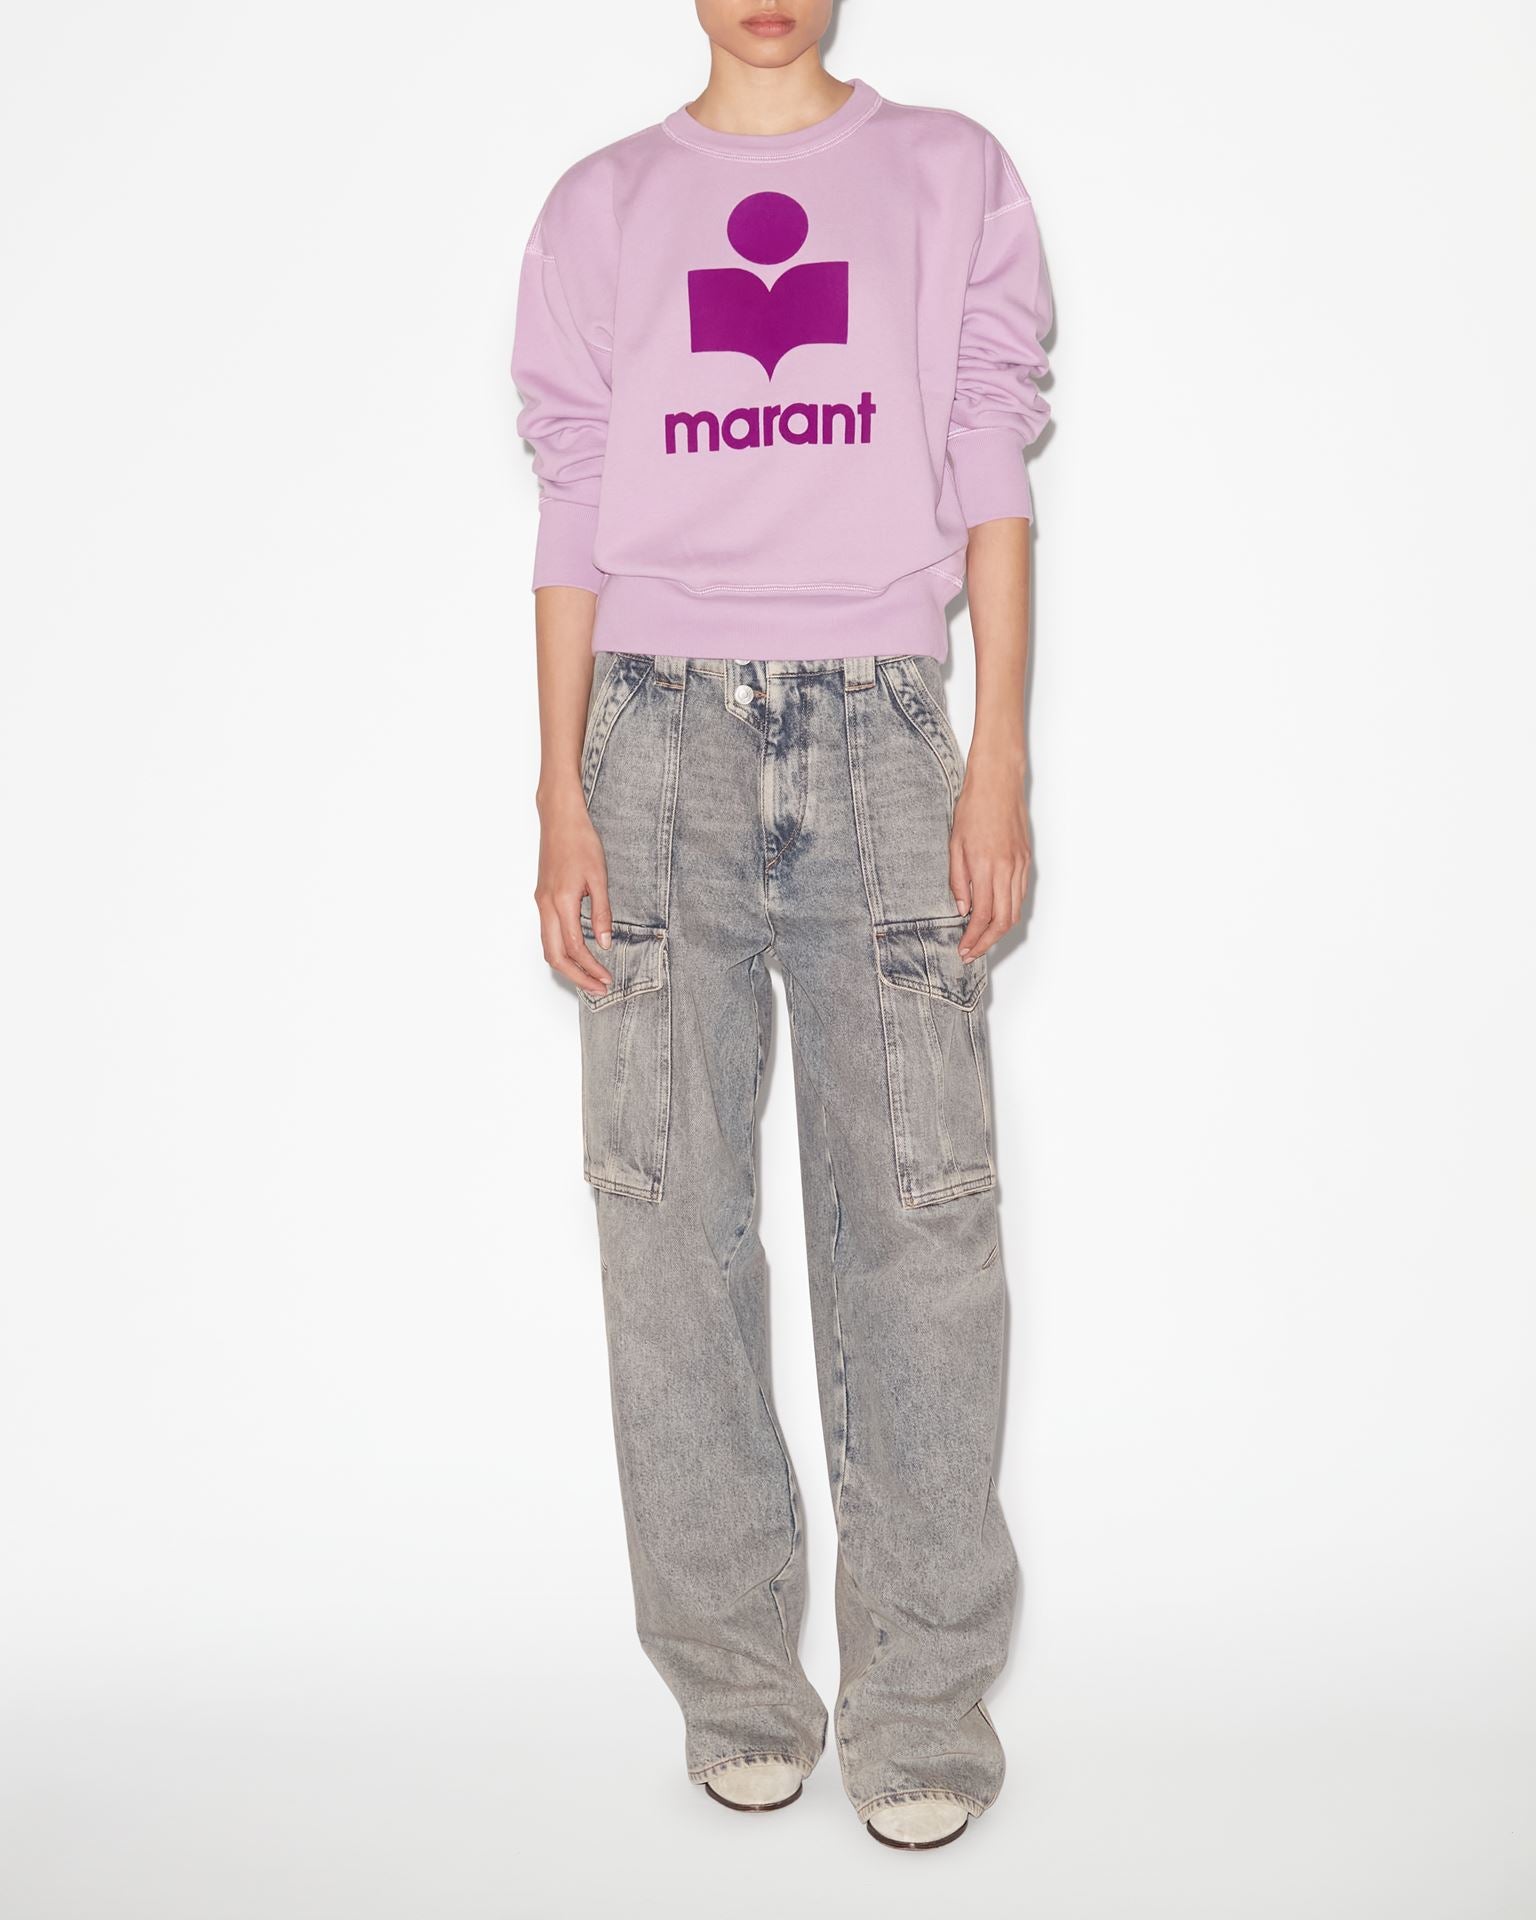 Mobyli Sweatshirt in Lilac/Purple